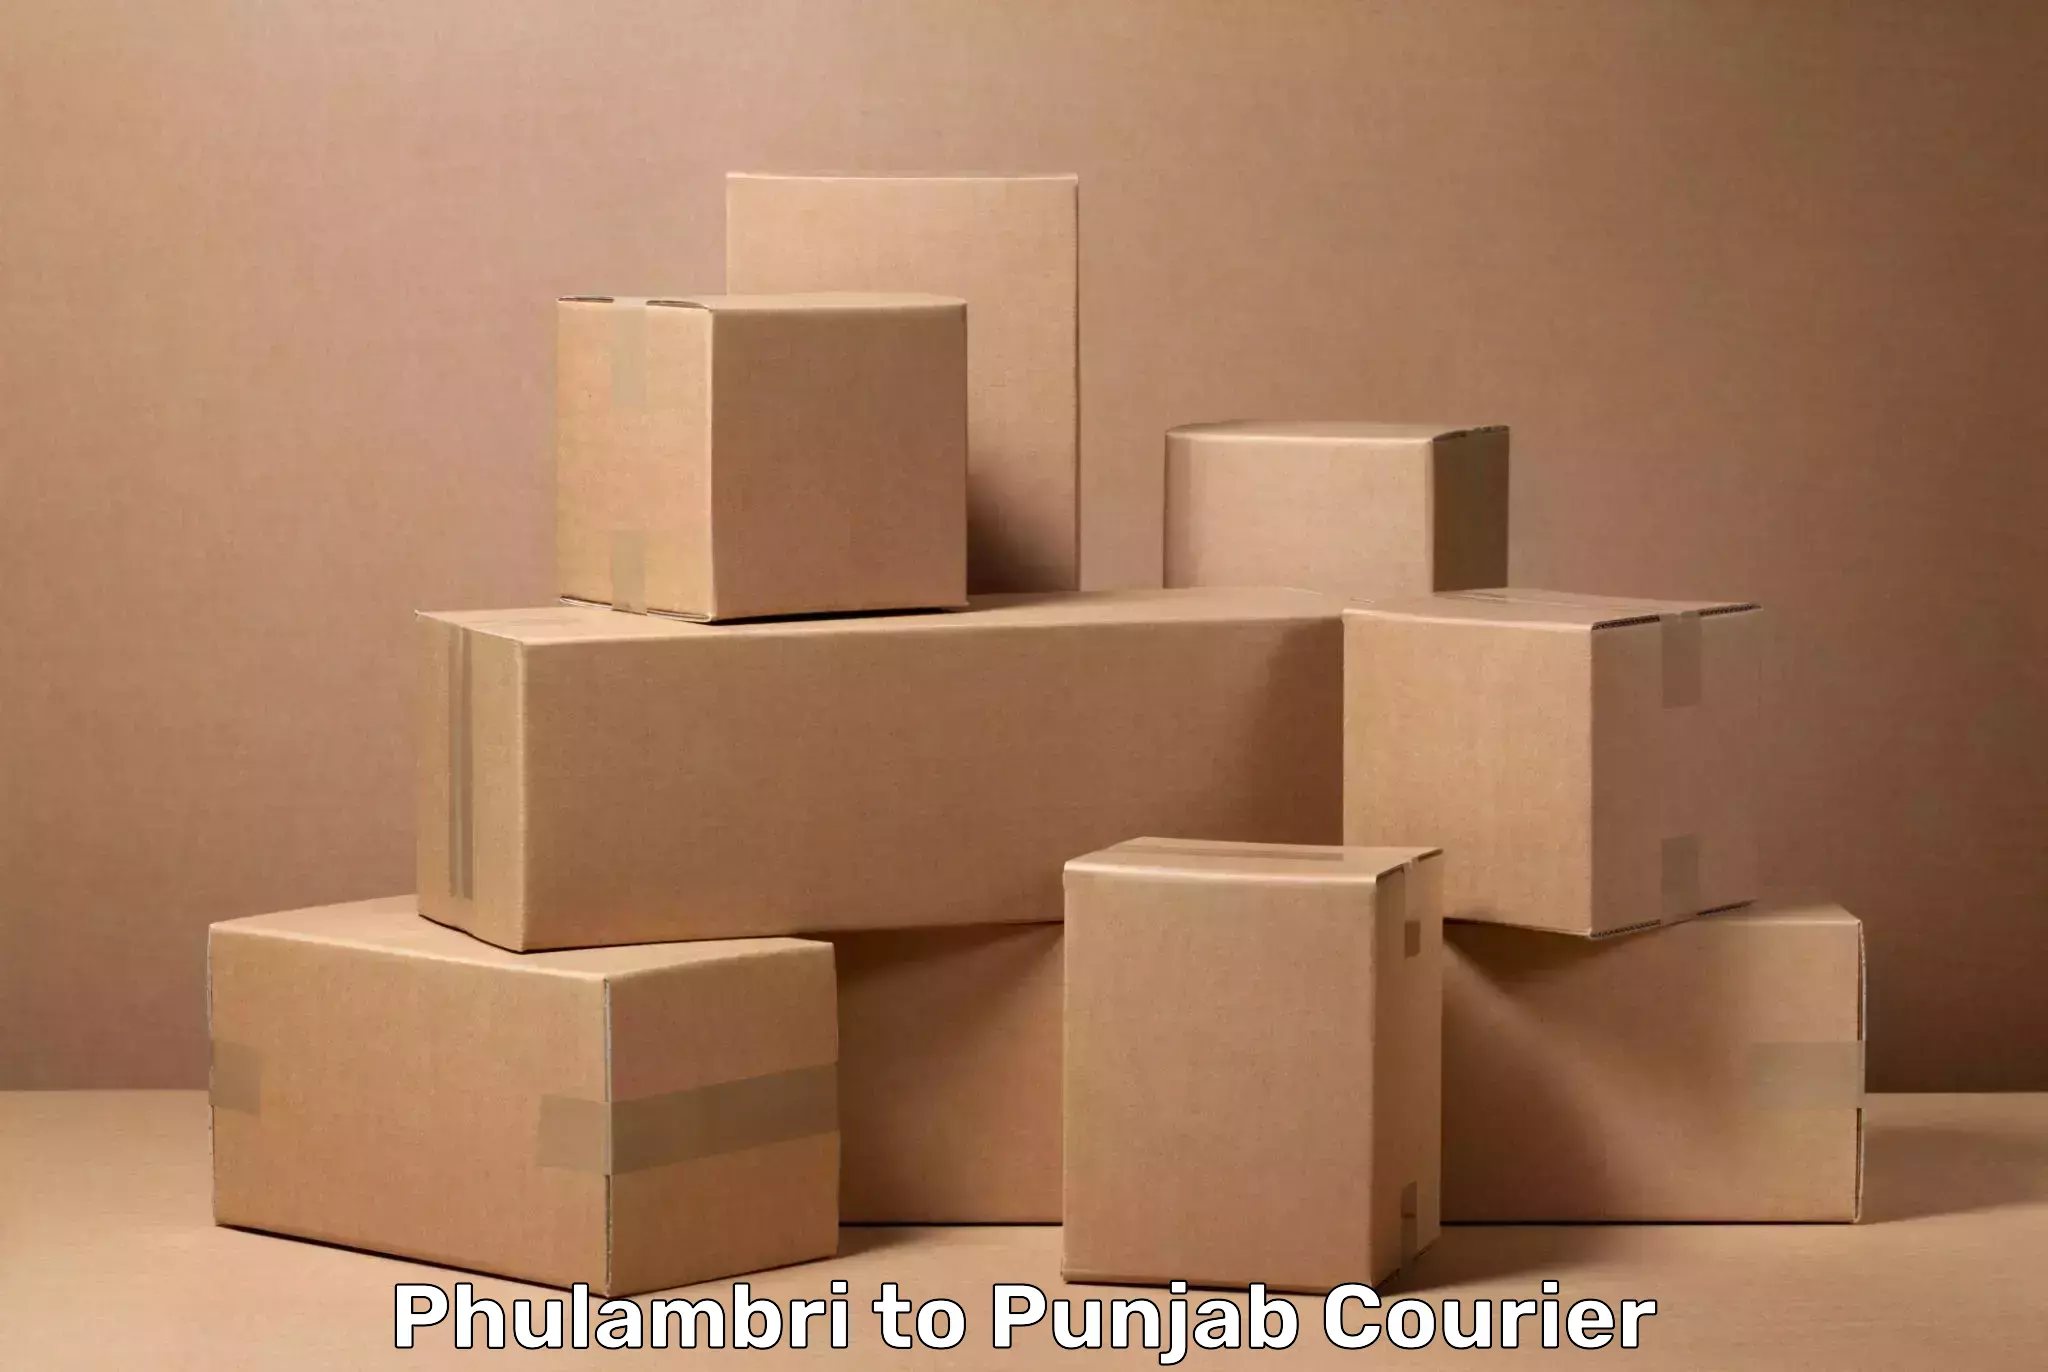 Luggage transport service in Phulambri to Punjab